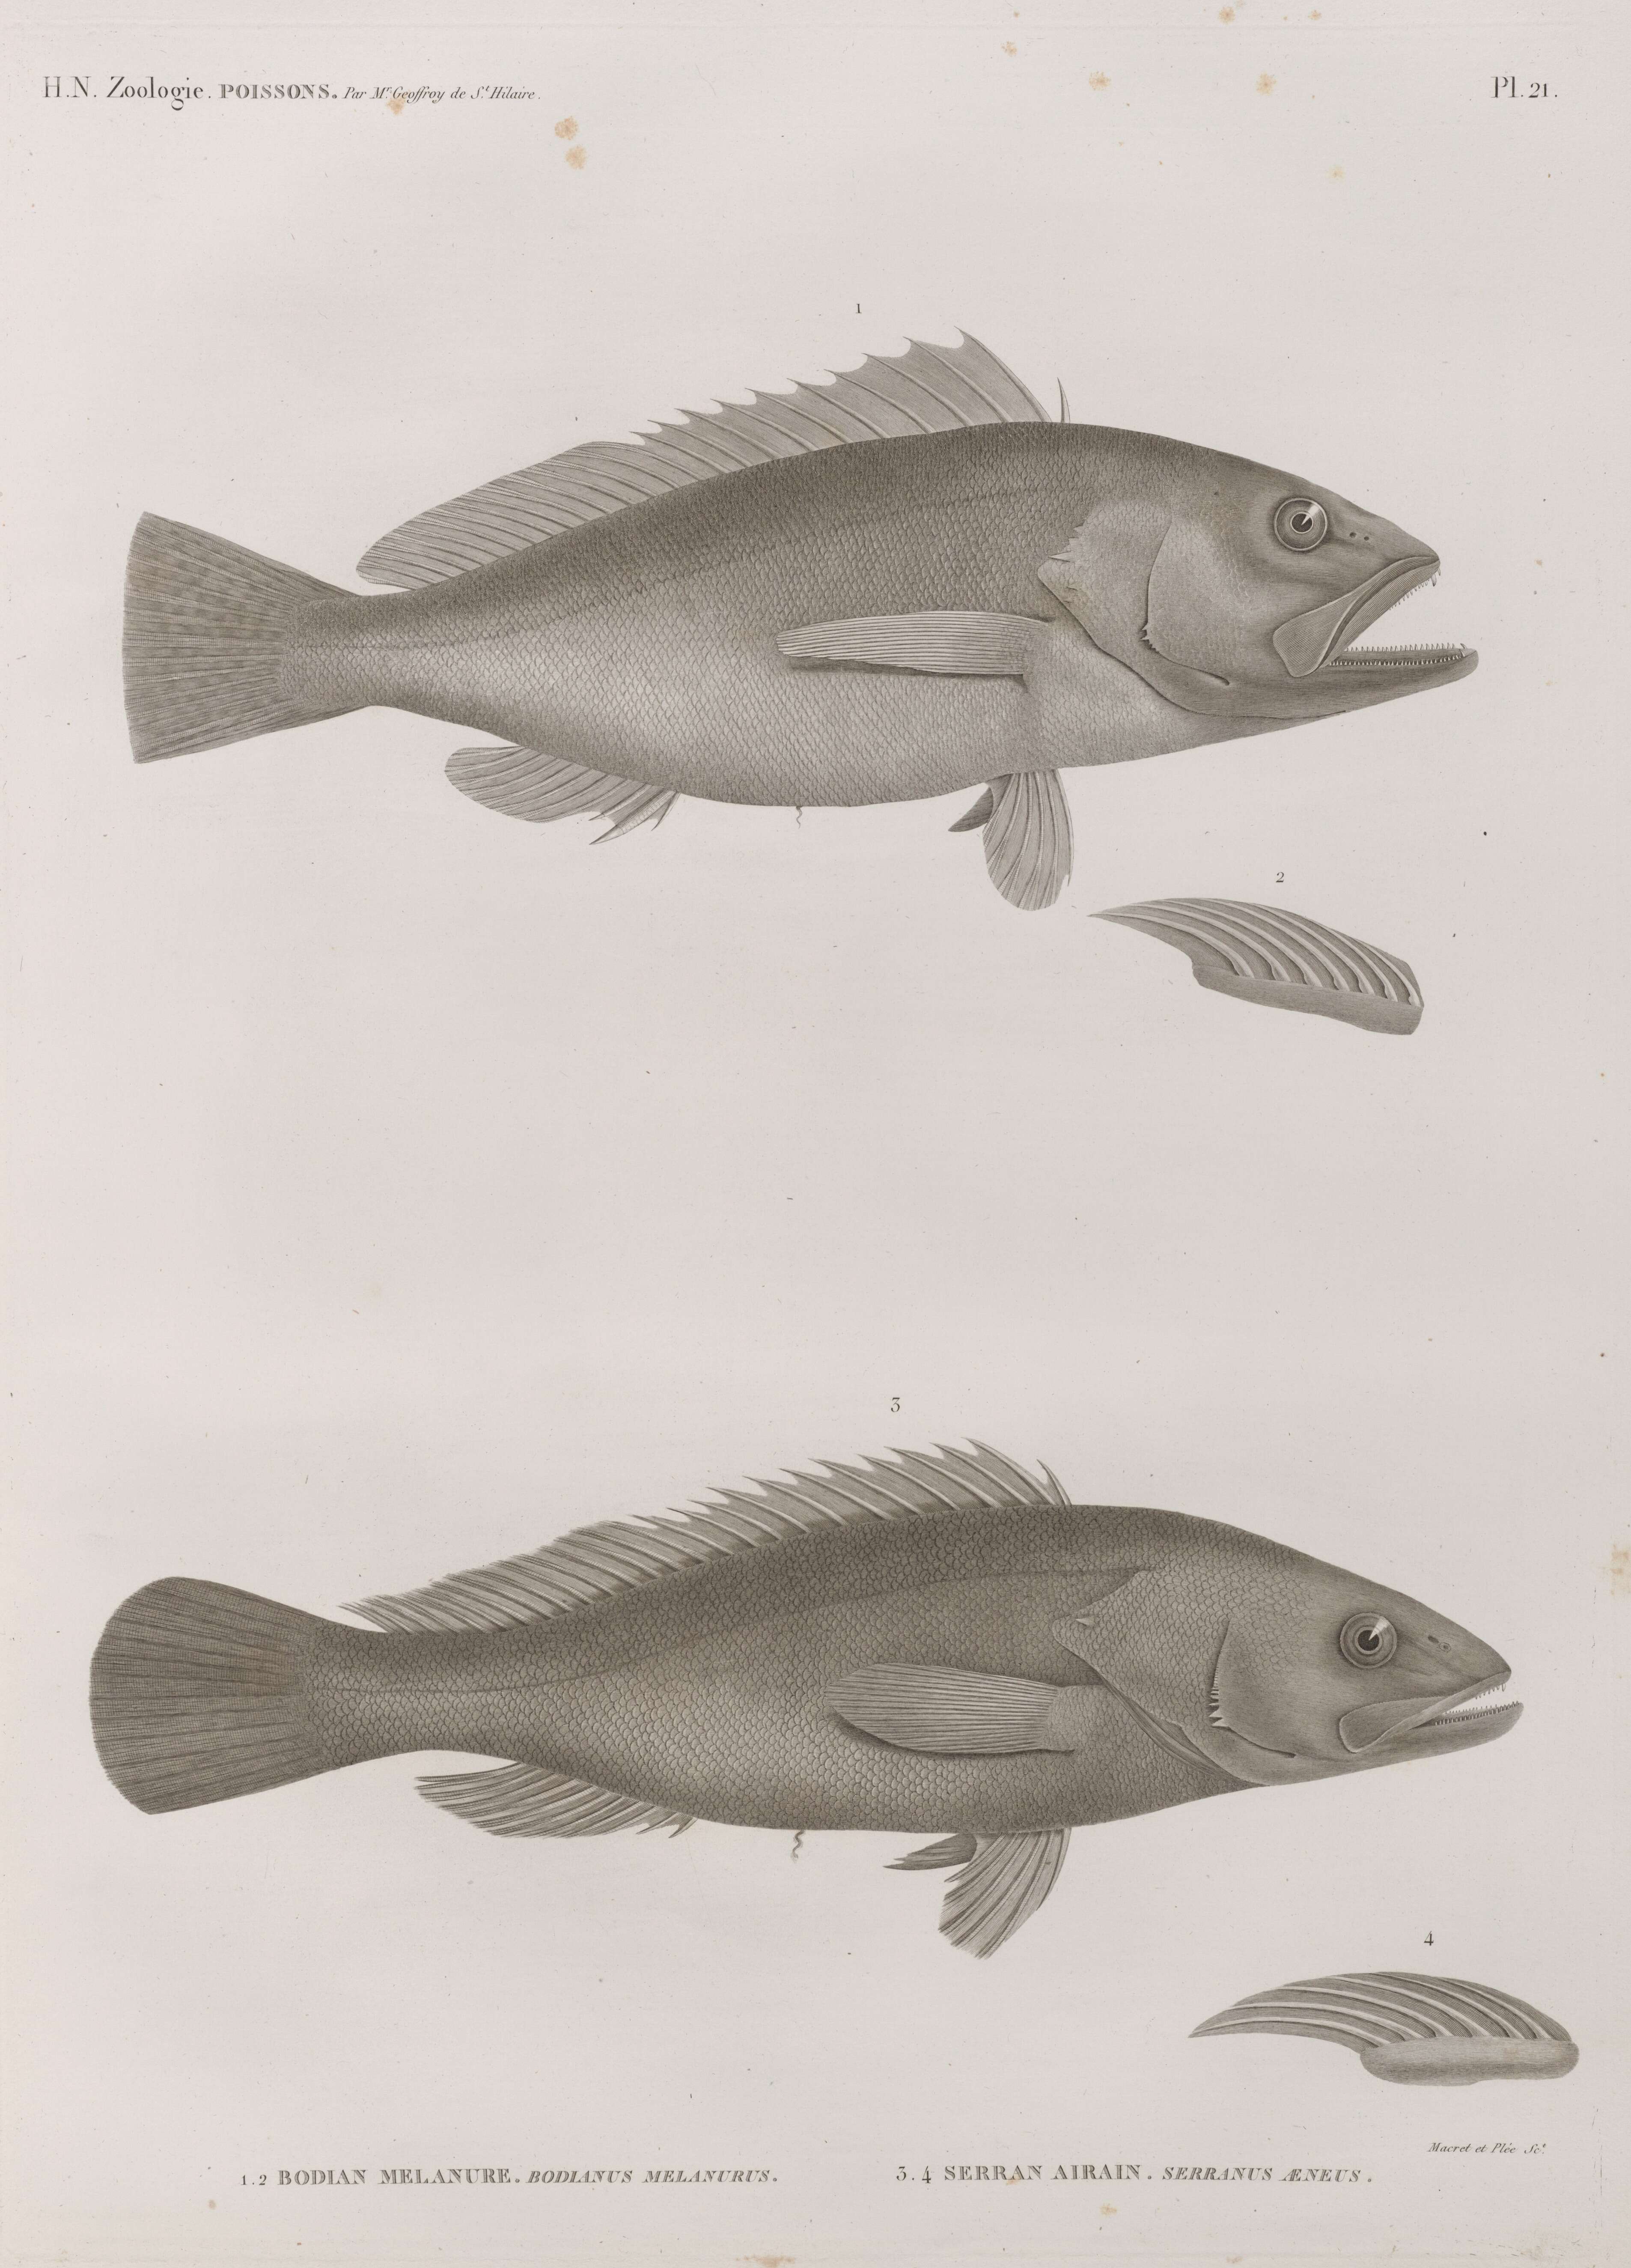 Sivun Epinephelus aeneus (Geoffroy Saint-Hilaire 1817) kuva